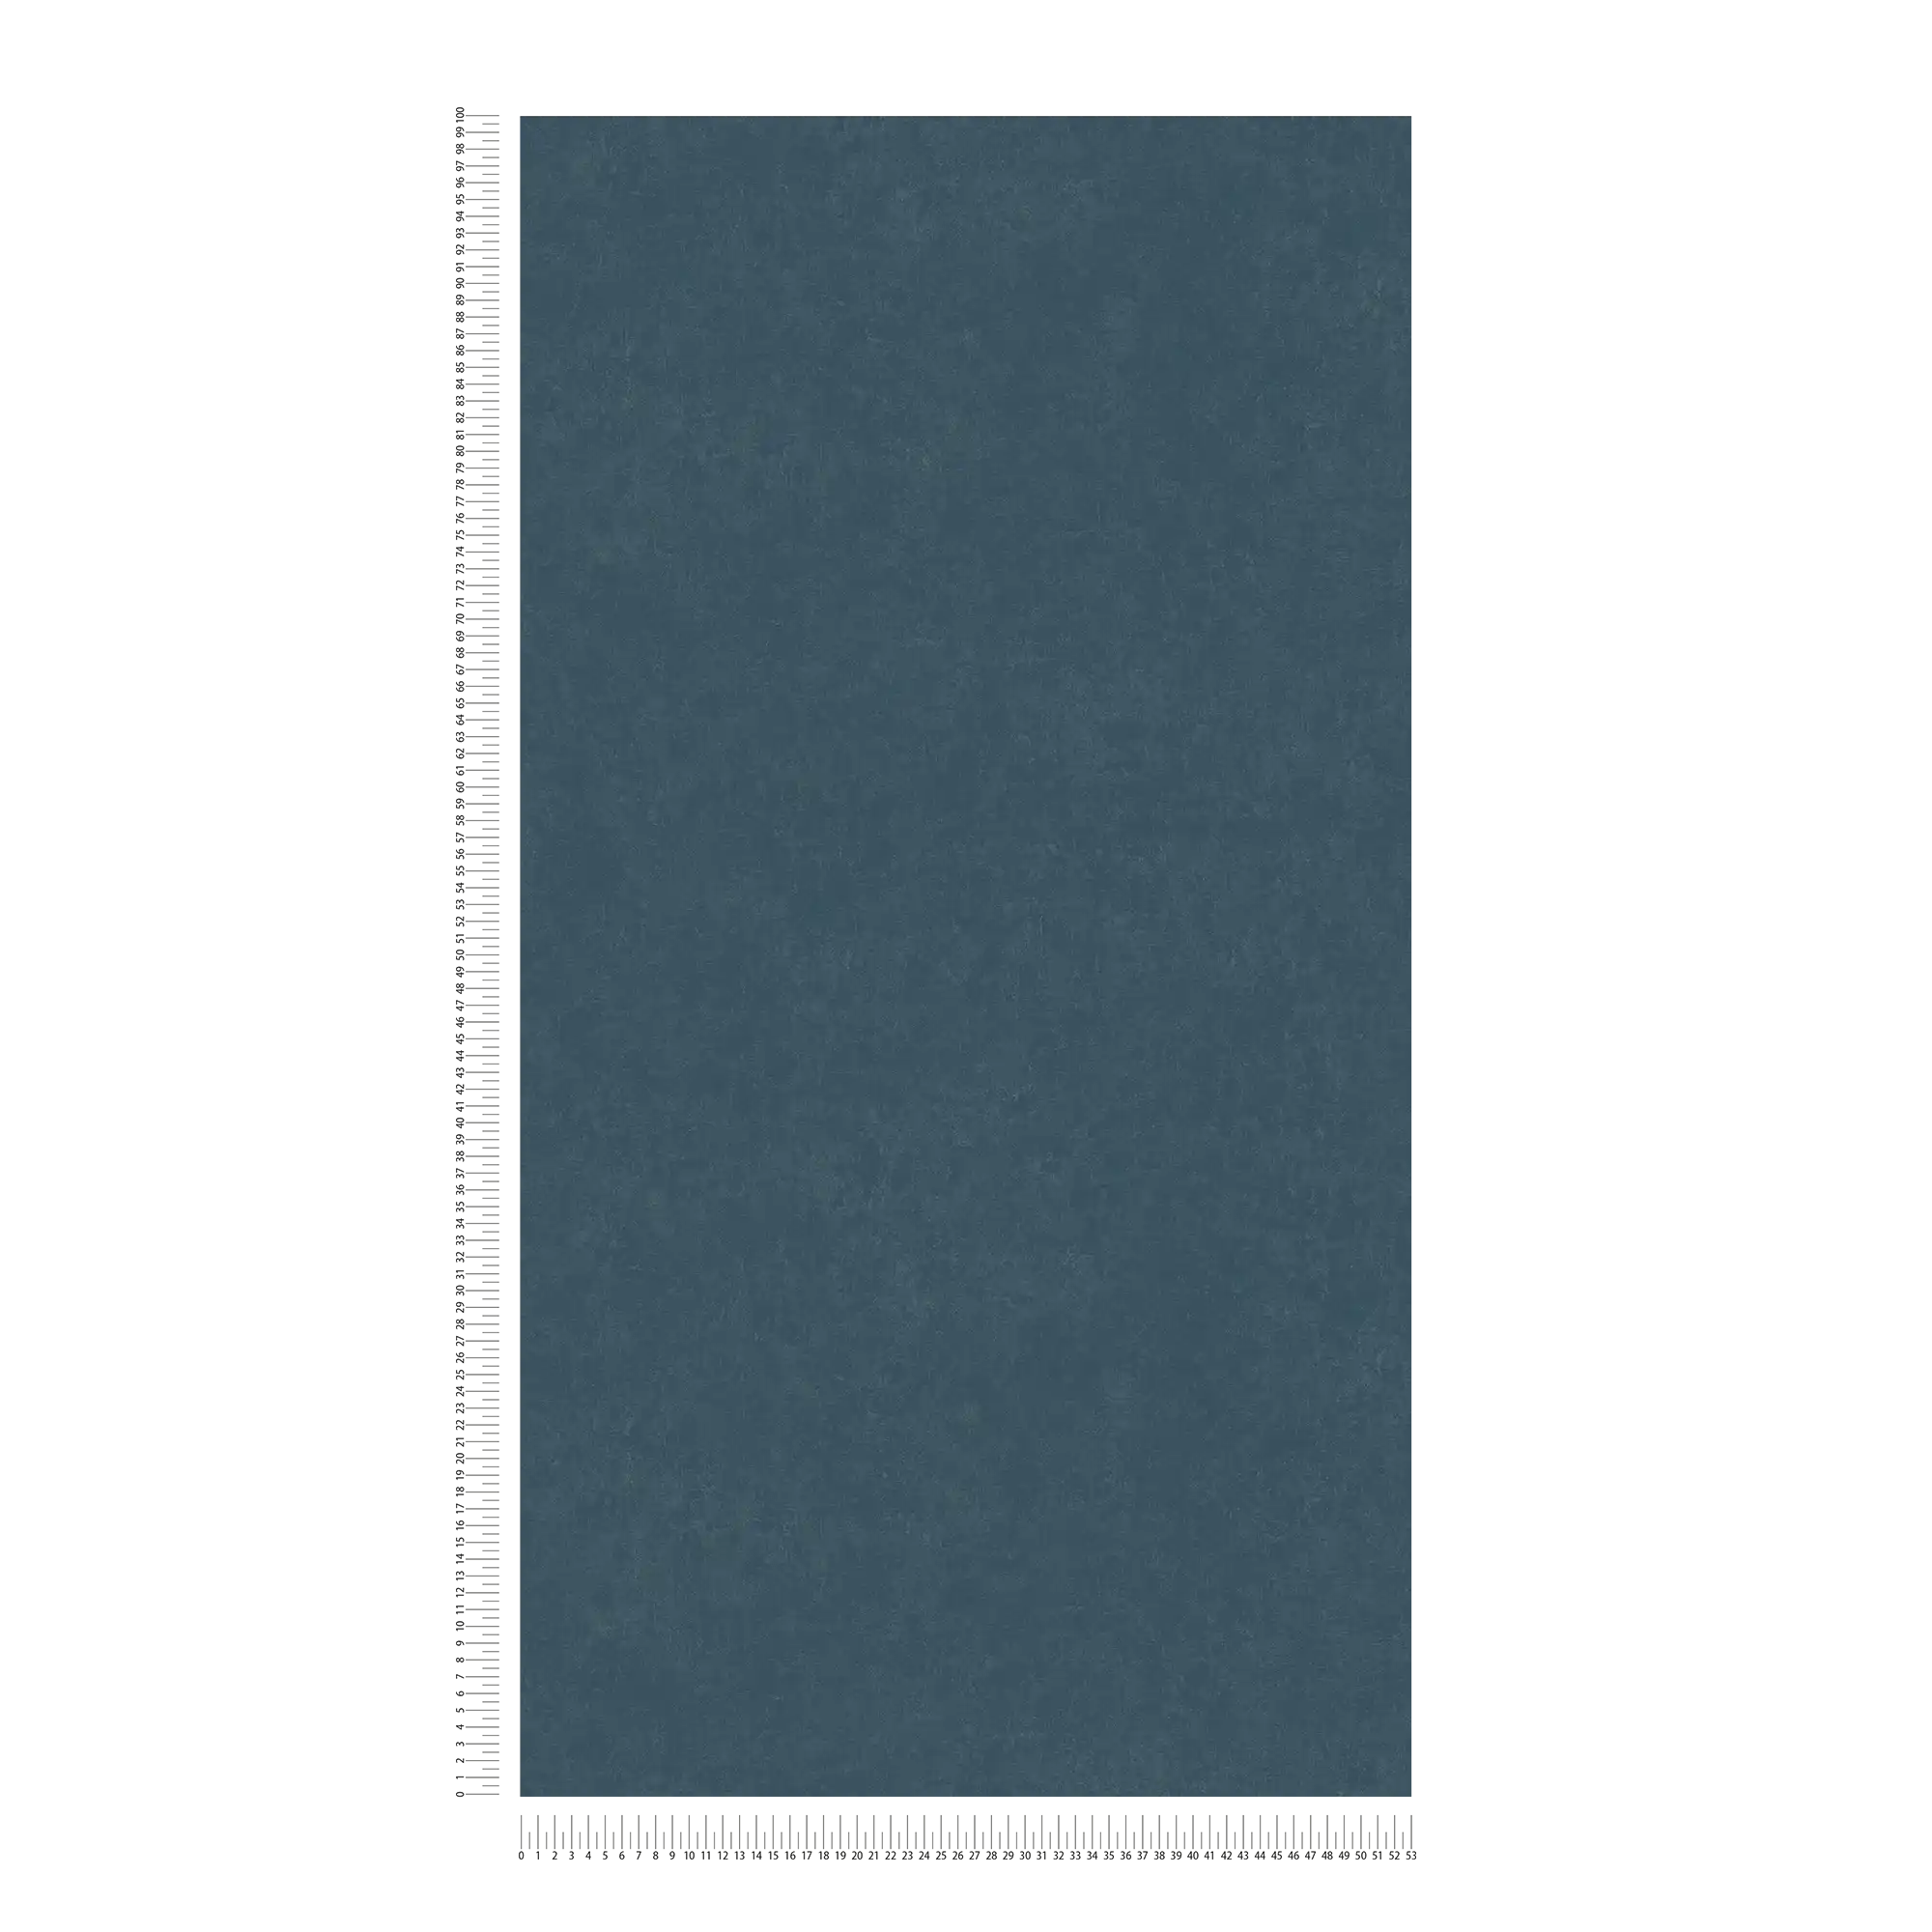             Effen behang donkerblauw met structuurmotief - blauw
        